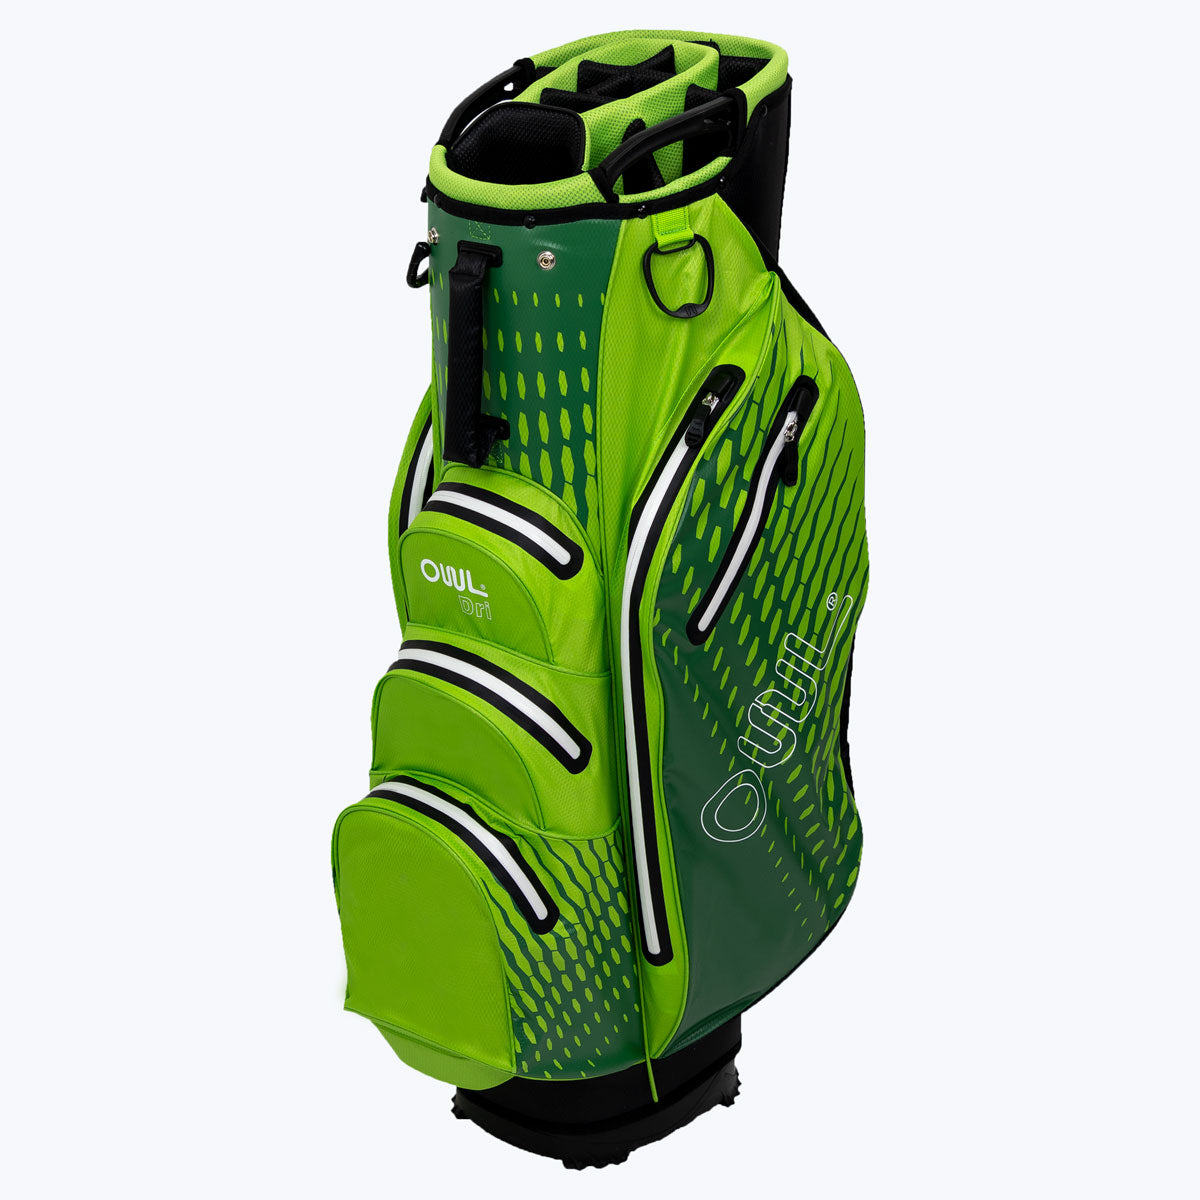 Aqua Waterproof Cart Bag | Golf Bag | OUUL Bags UK